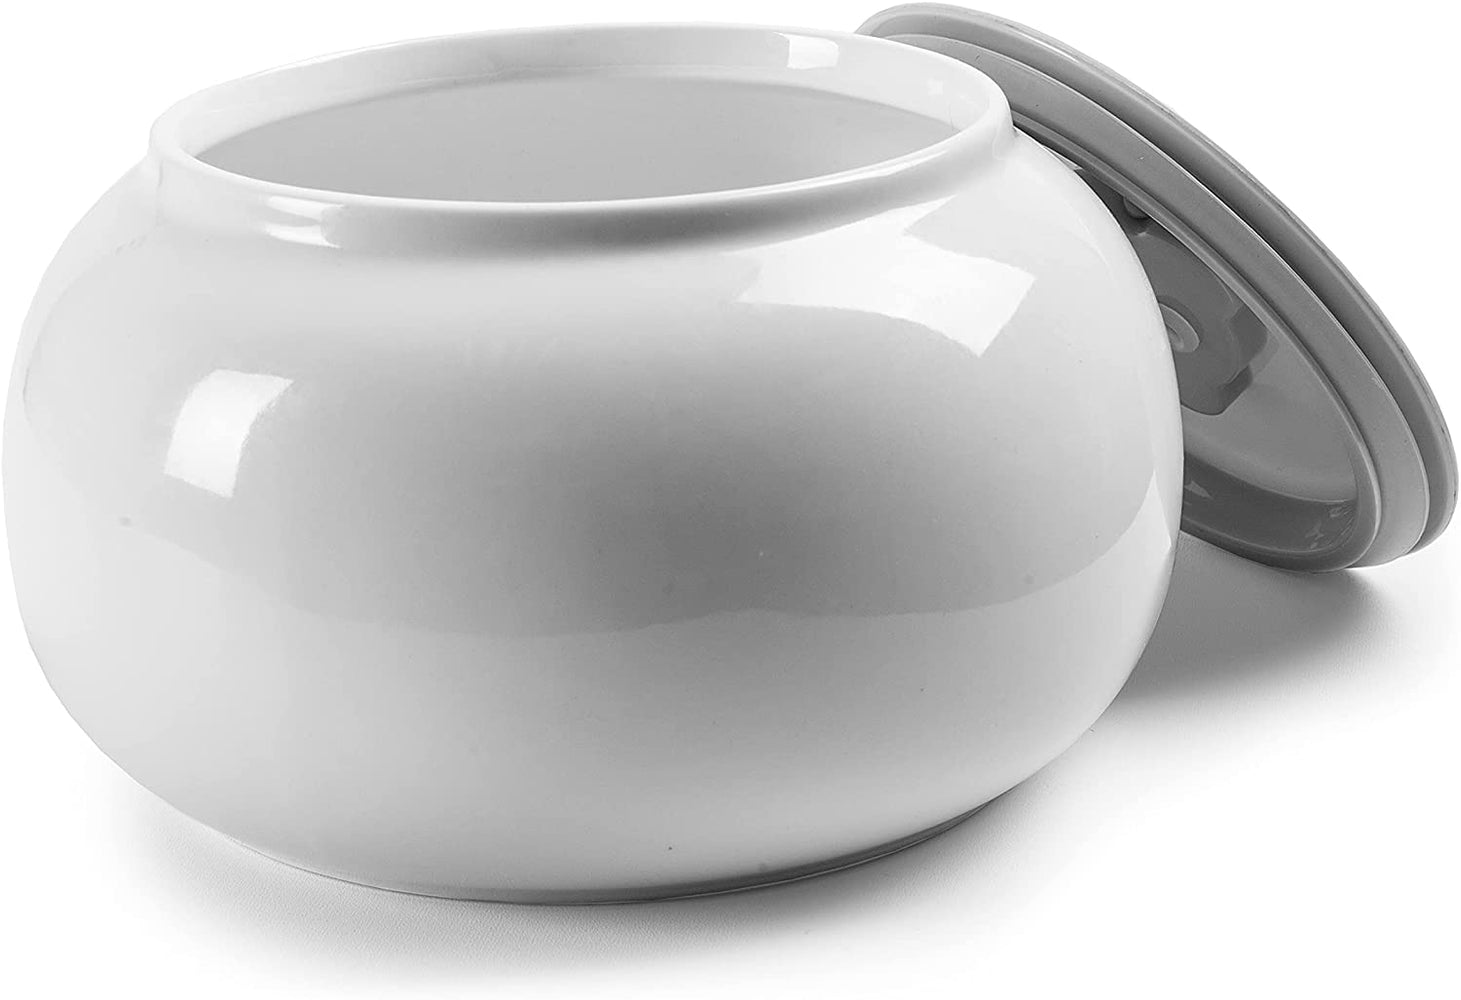 Duronic P1YM1 Vaso di ricambio per Yogurtiera – 1 vasetto in ceramica – Compatibile con le yogurtiere Duronic YM1 e YM2 – Ciotola da 1,5 litri con coperchio